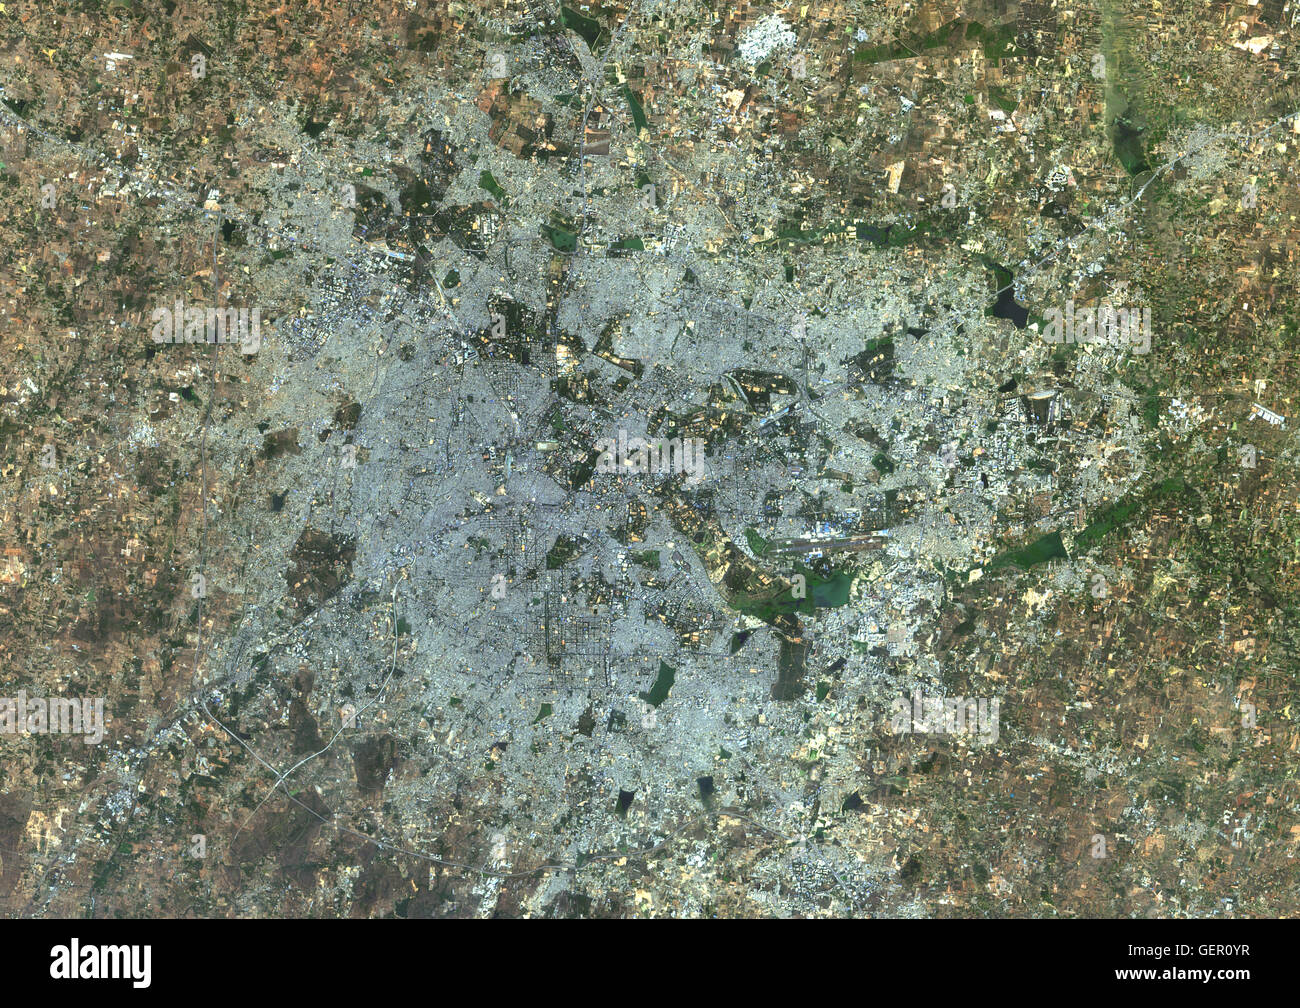 Vista satellitare di Bangalore, India. È la capitale dello stato indiano del Karnataka. Questa immagine è stata elaborata sulla base dei dati acquisiti nel 2014 dal satellite Landsat 8 satellite. Foto Stock